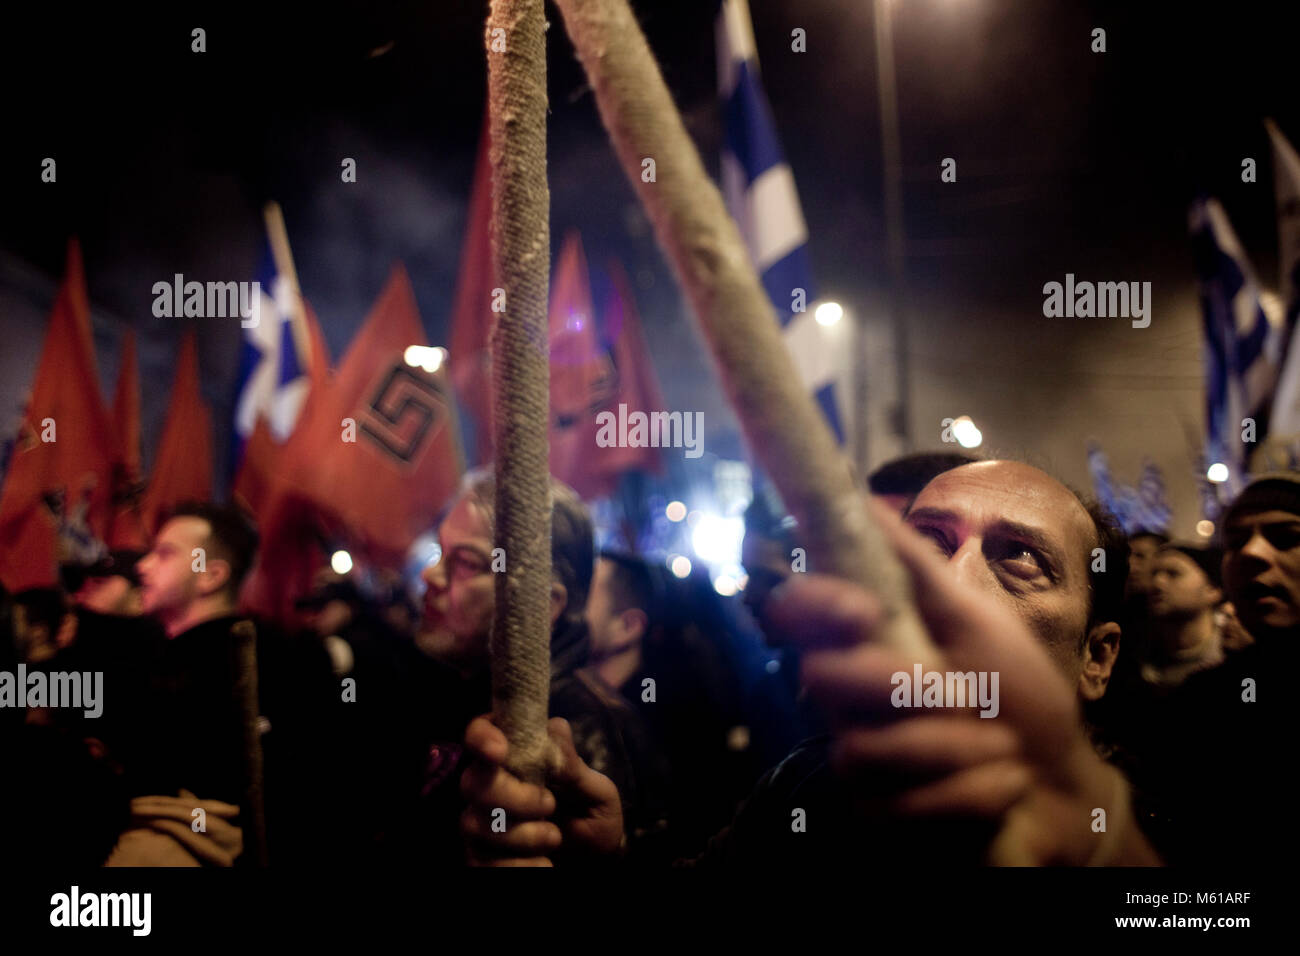 - 02/02/2013 - Athen - ganz rechts extreme nationalistische Partei Golden Dawn organisiert eine Veranstaltung der Tod von drei griechischen Soldaten während der imia Krise im Jahr 1996 zu gedenken. Athen, 2. Februar 2013 - Stefania Mizara/Le Pictorium Stockfoto